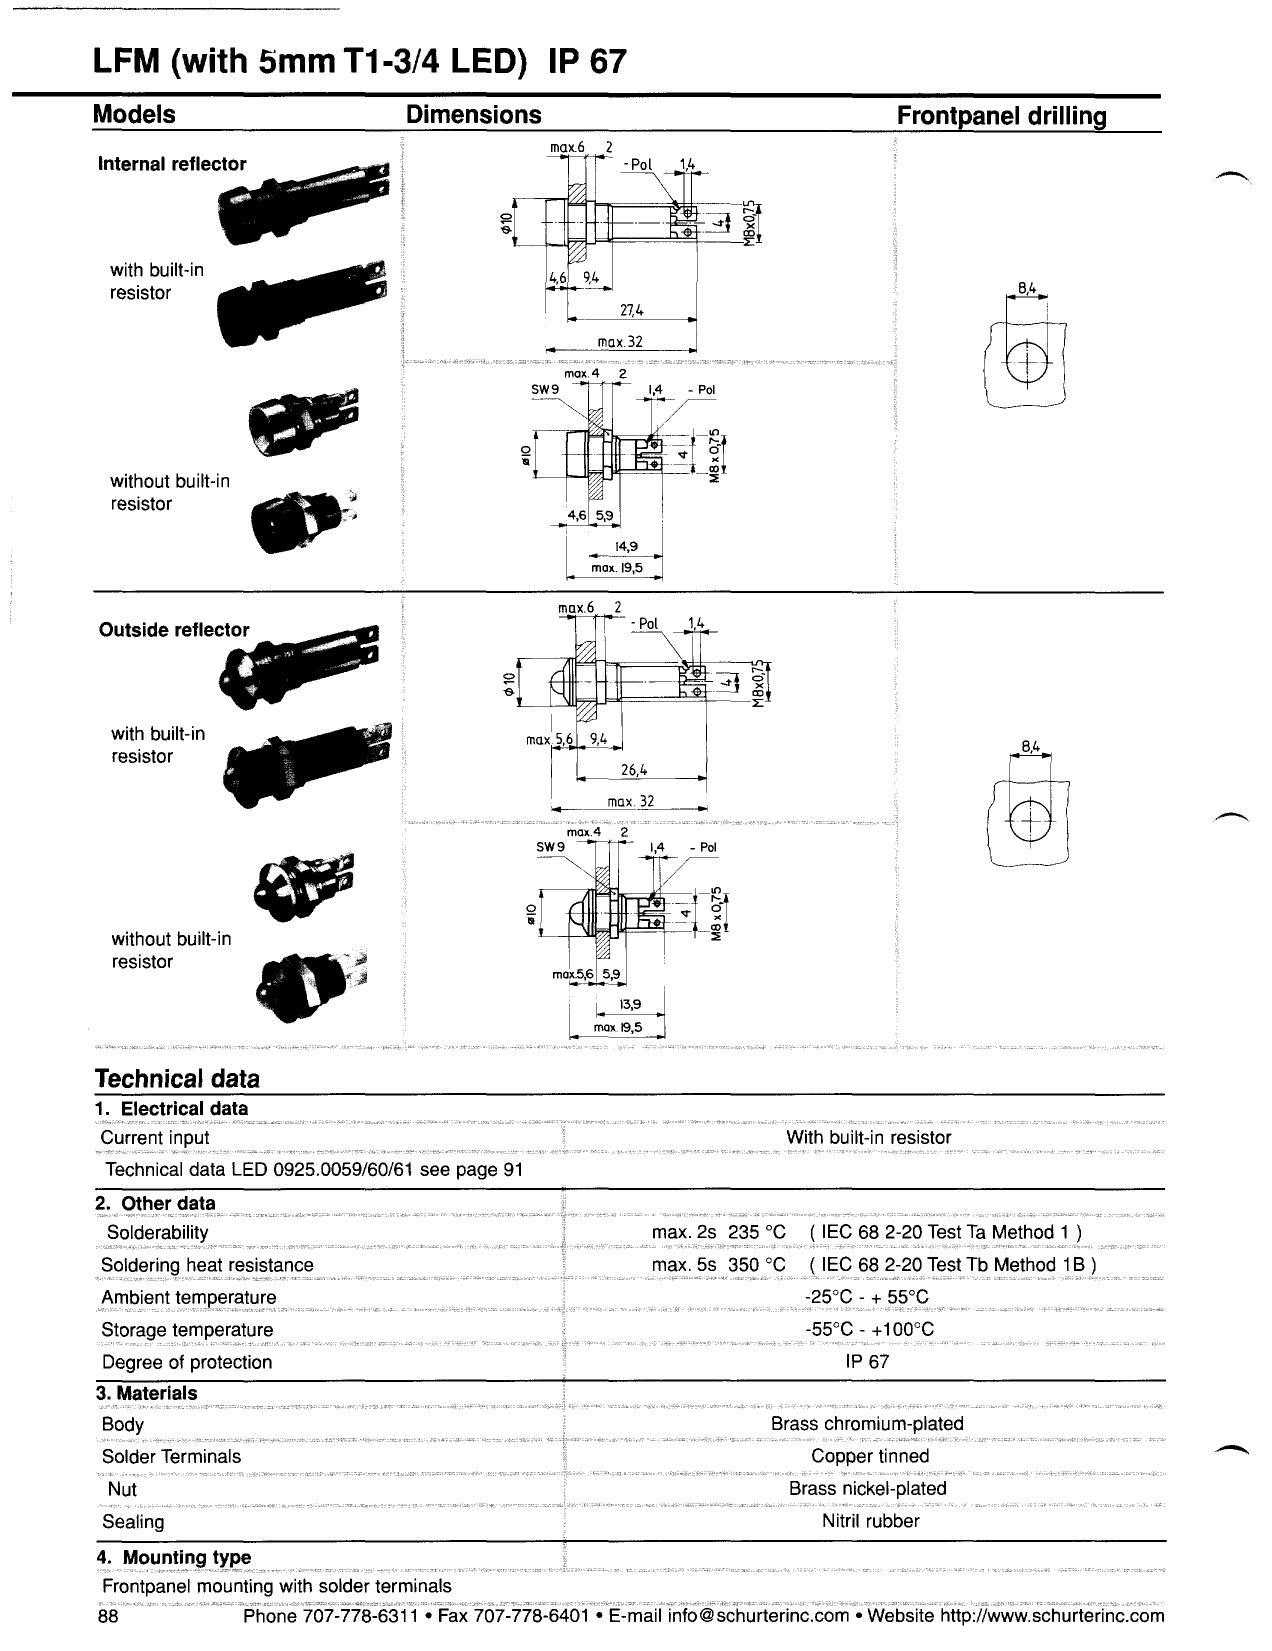 lfm-with-smm-t1-34-led-ip-67-models.pdf